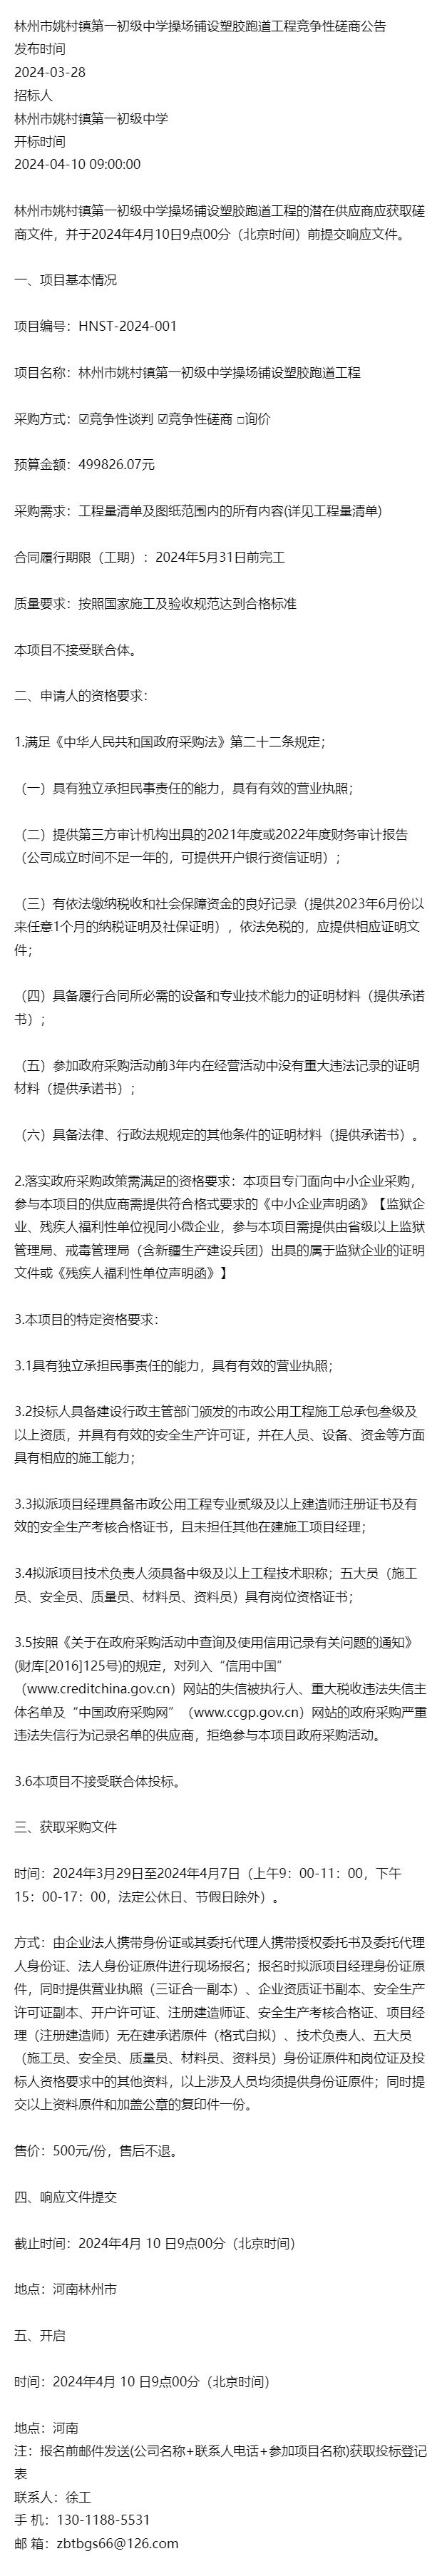 林州市姚村镇第一初级中学操场铺设塑胶跑道工程竞争性磋商公告(图1)